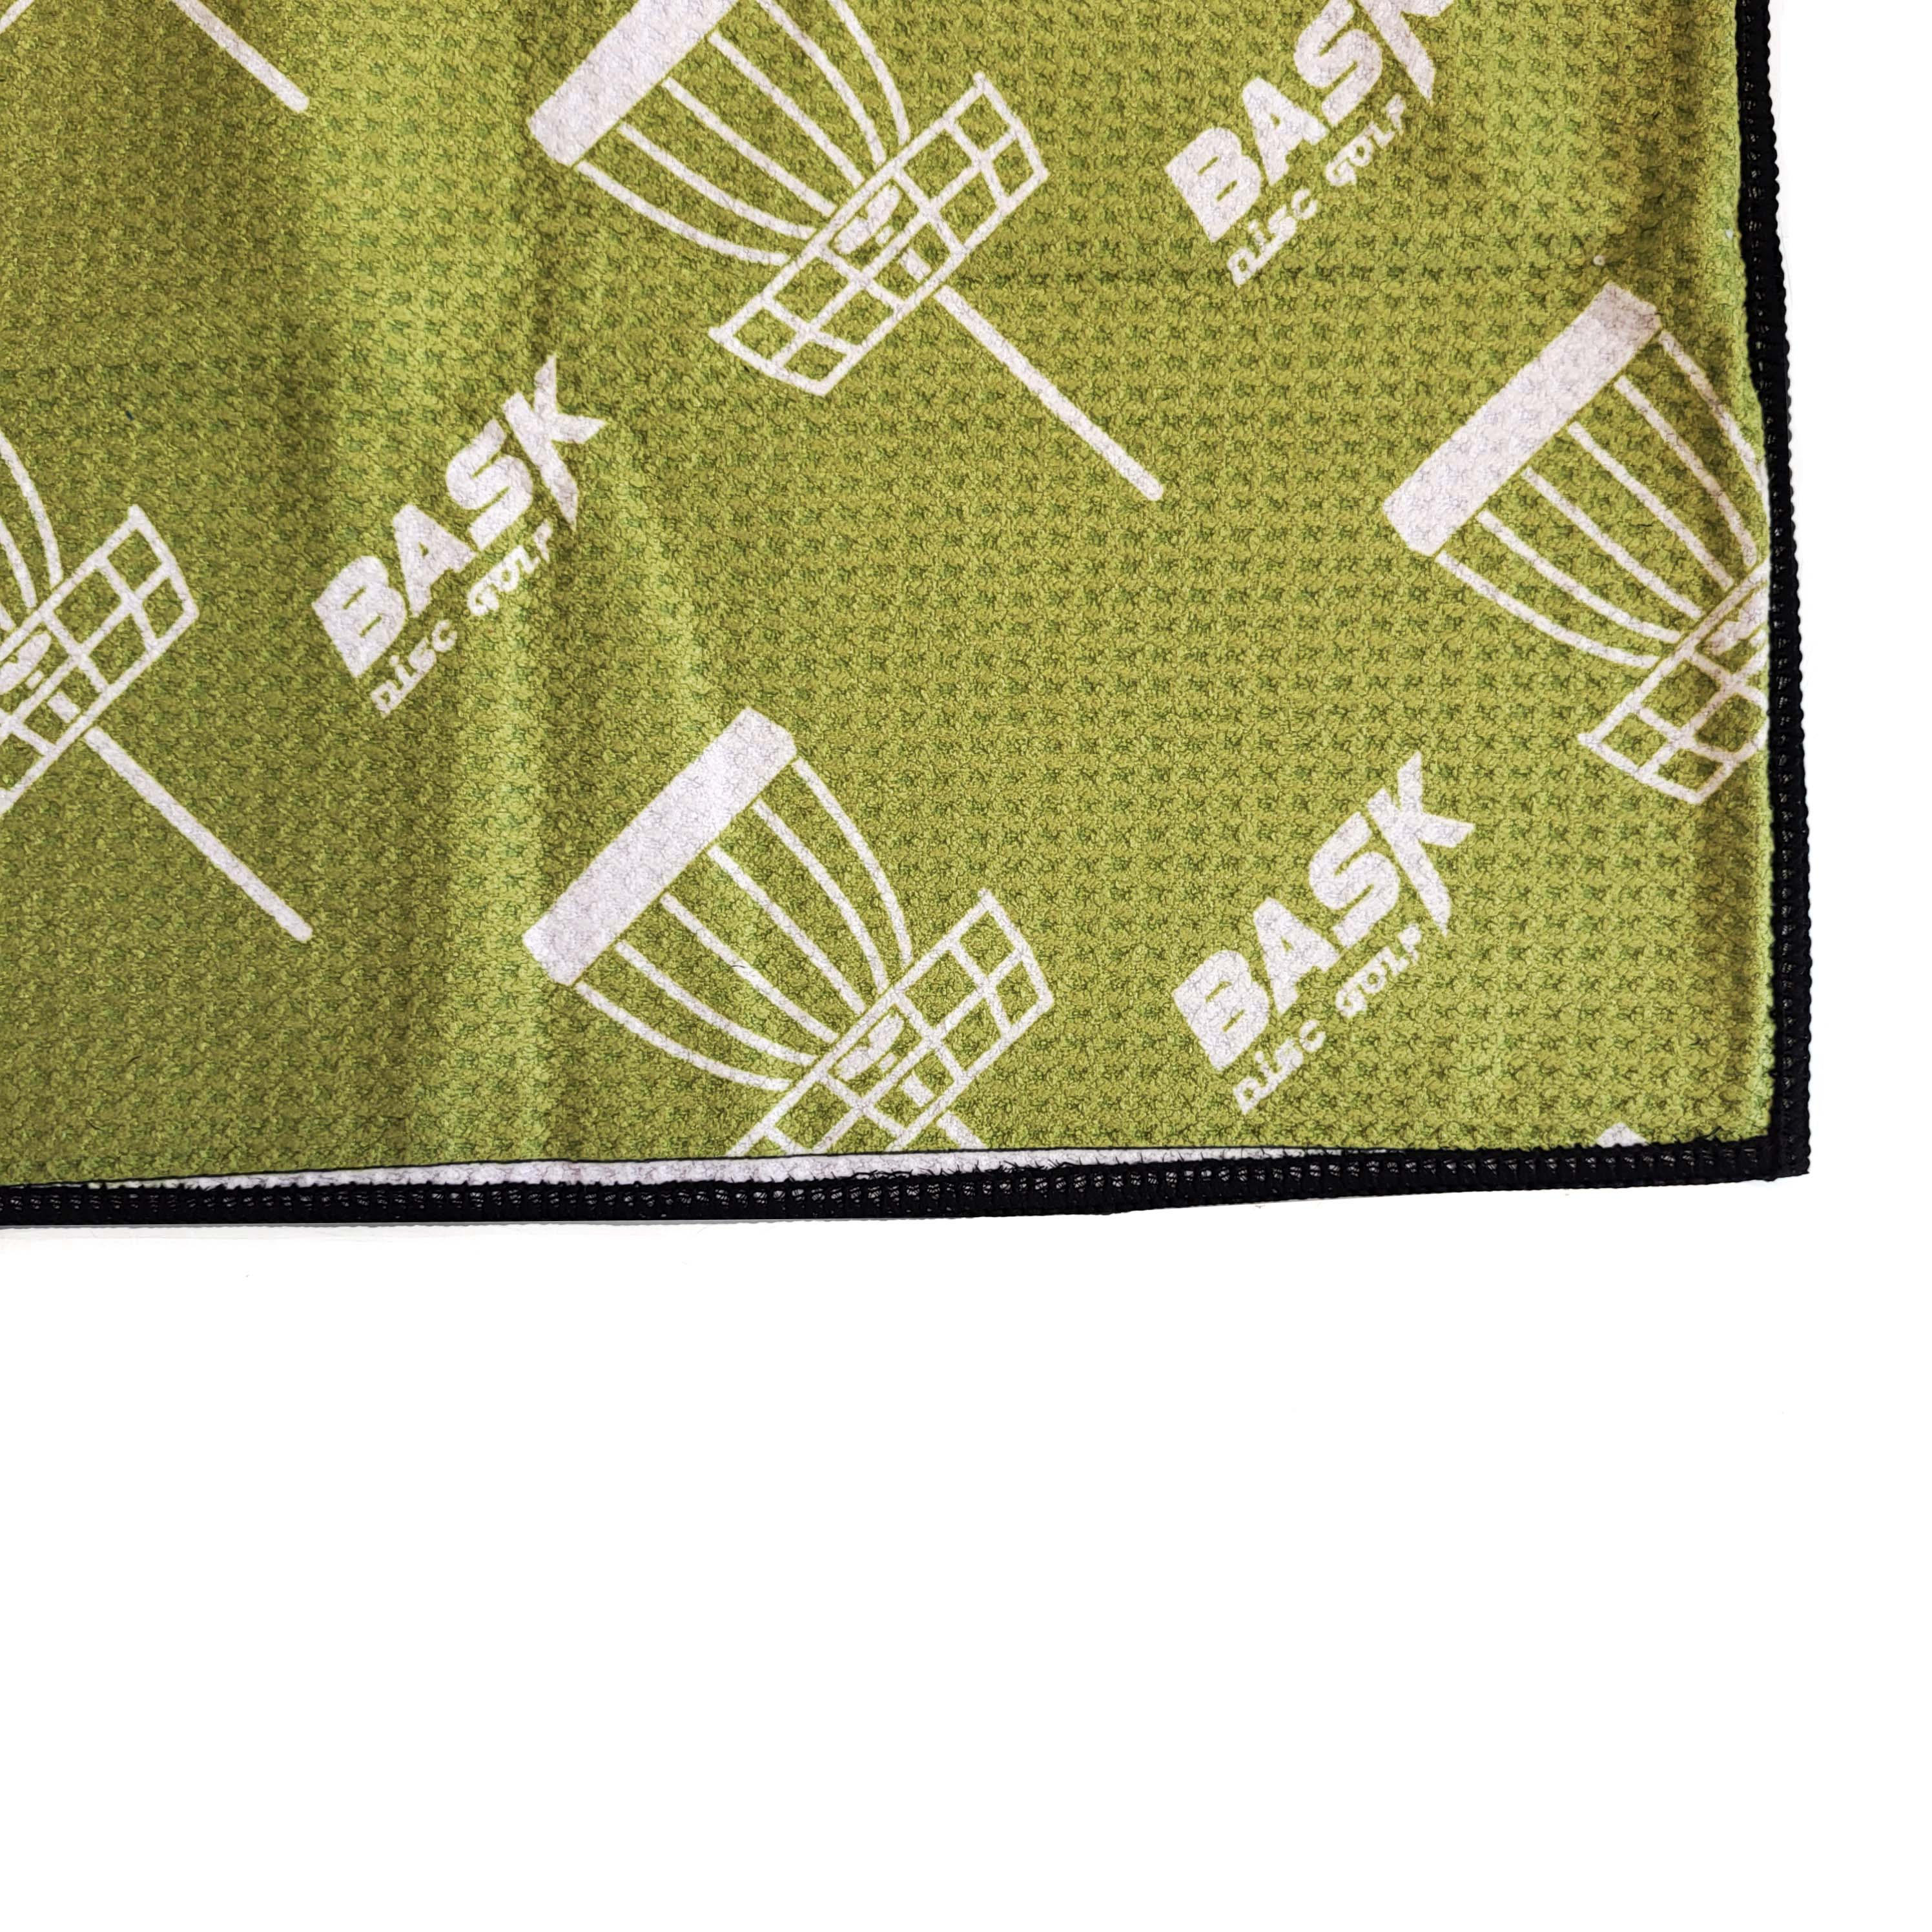 Sample Sale Bask Disc Golf Super Towel